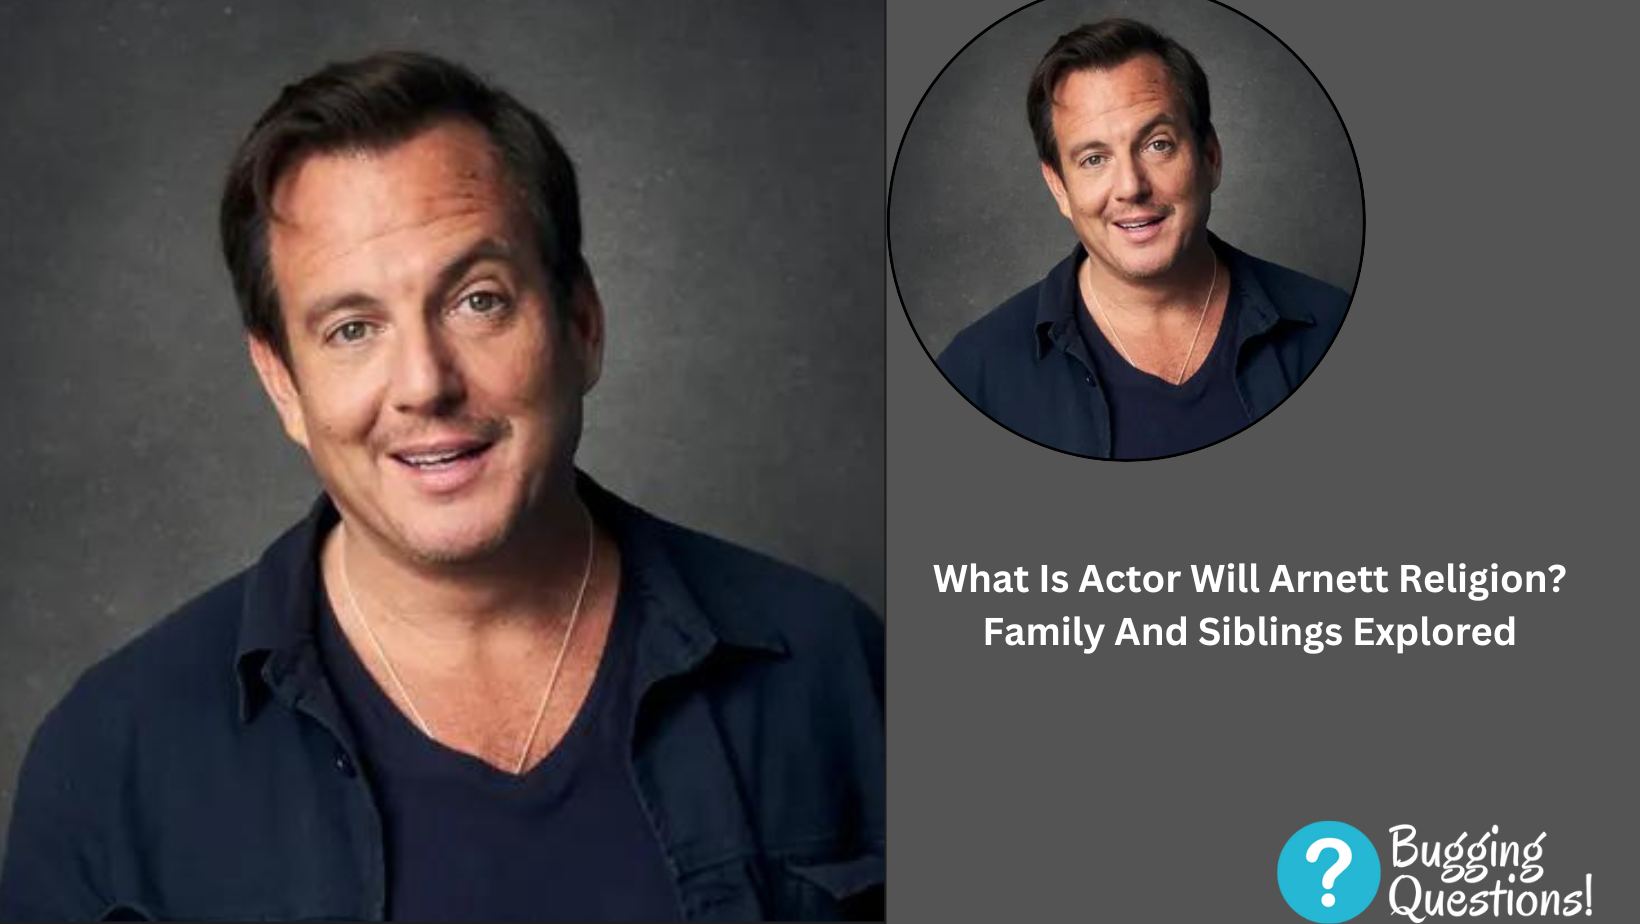 What Is Actor Will Arnett Religion?